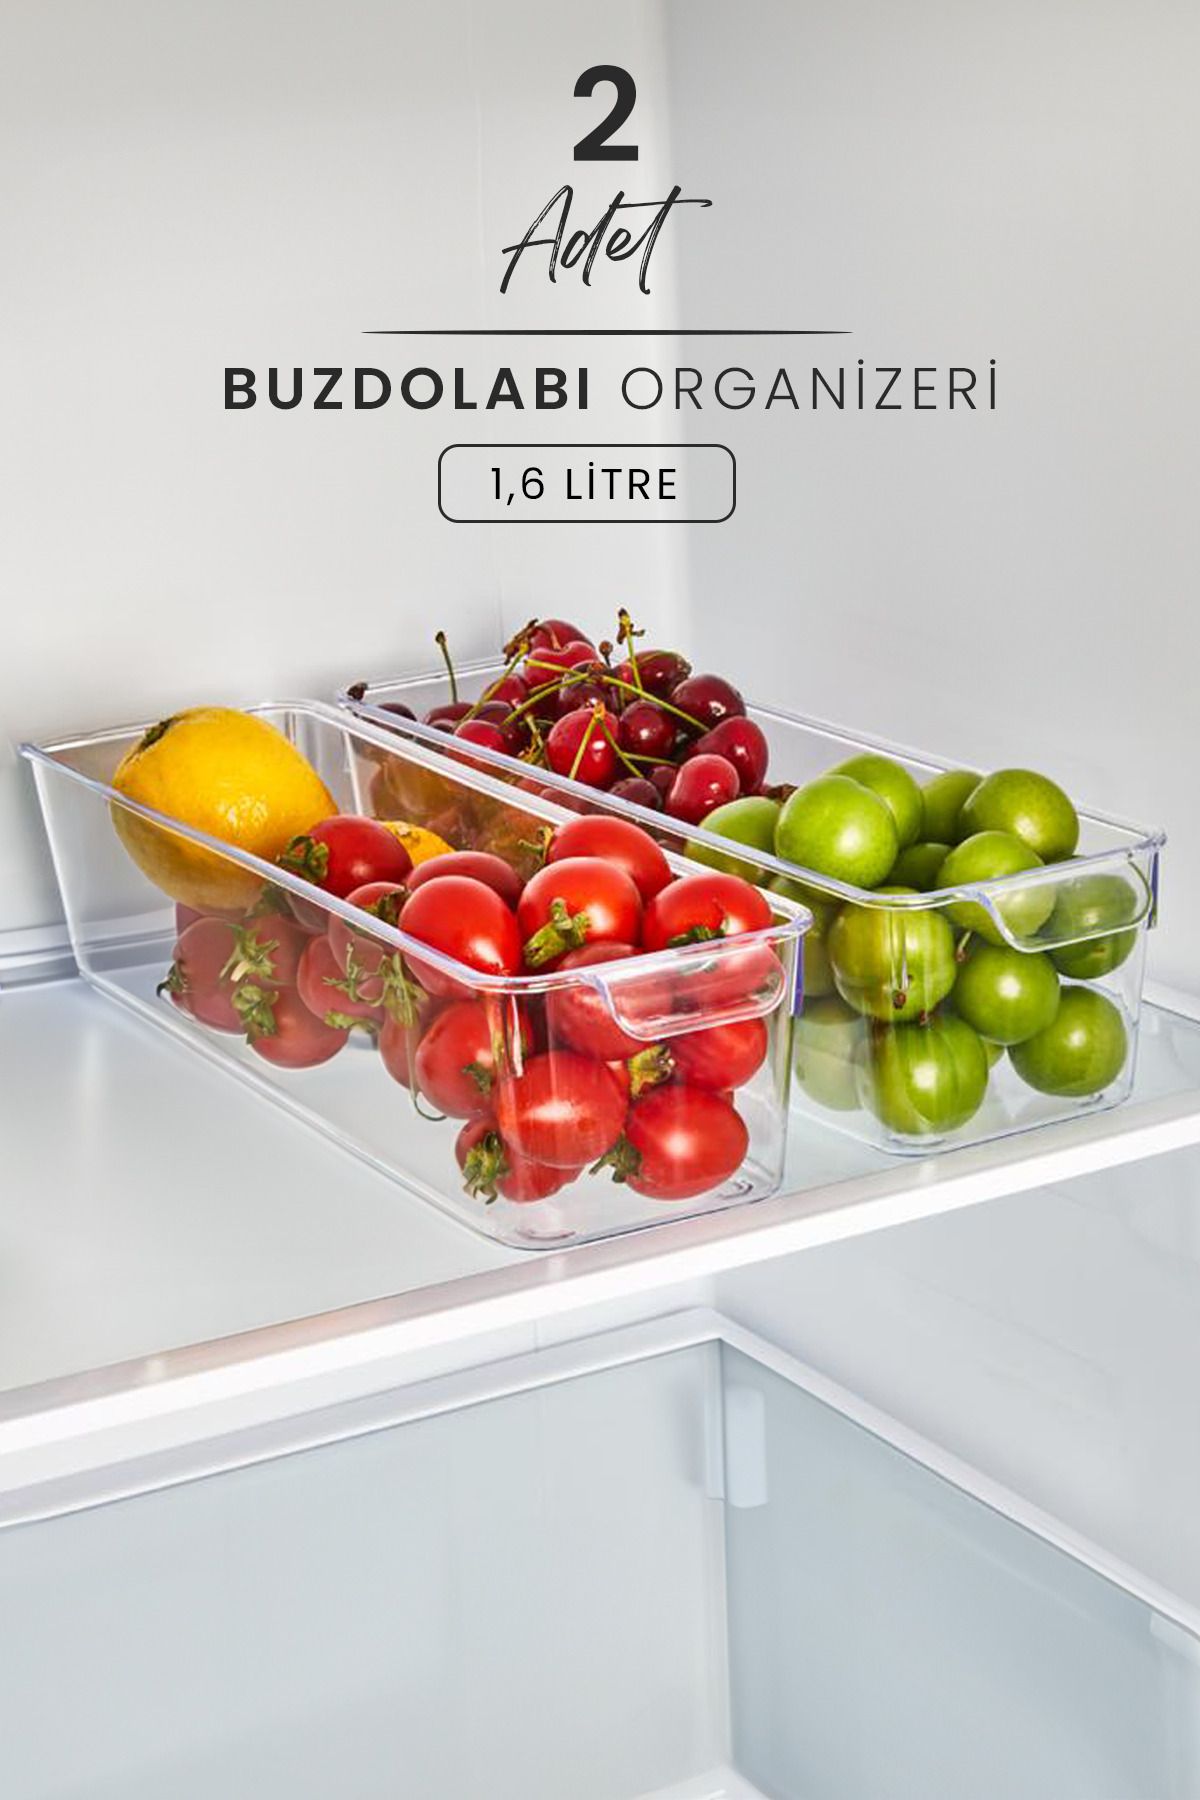 Kitchen Life 2'li Buzdolabı İçi Düzenleyici 1,6 LT  - Sebze Meyve Saklama Kabı Organizeri